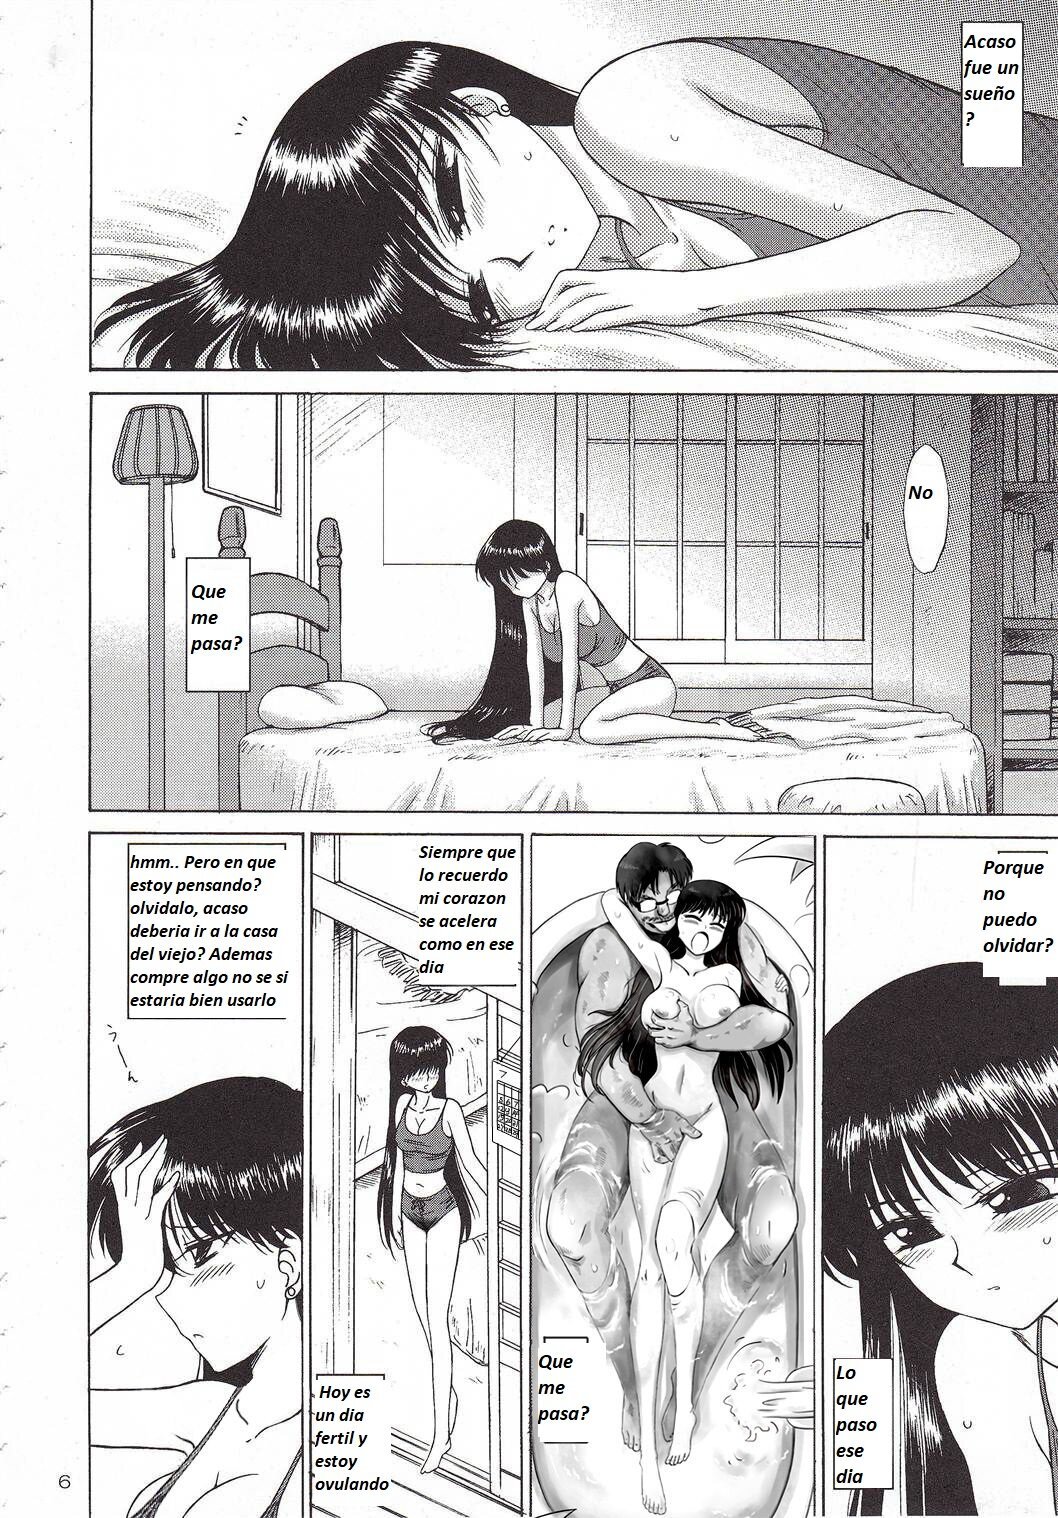 Kayoubi no Yurameki impregnate (Bishoujo Senshi Sailor Moon) - 32